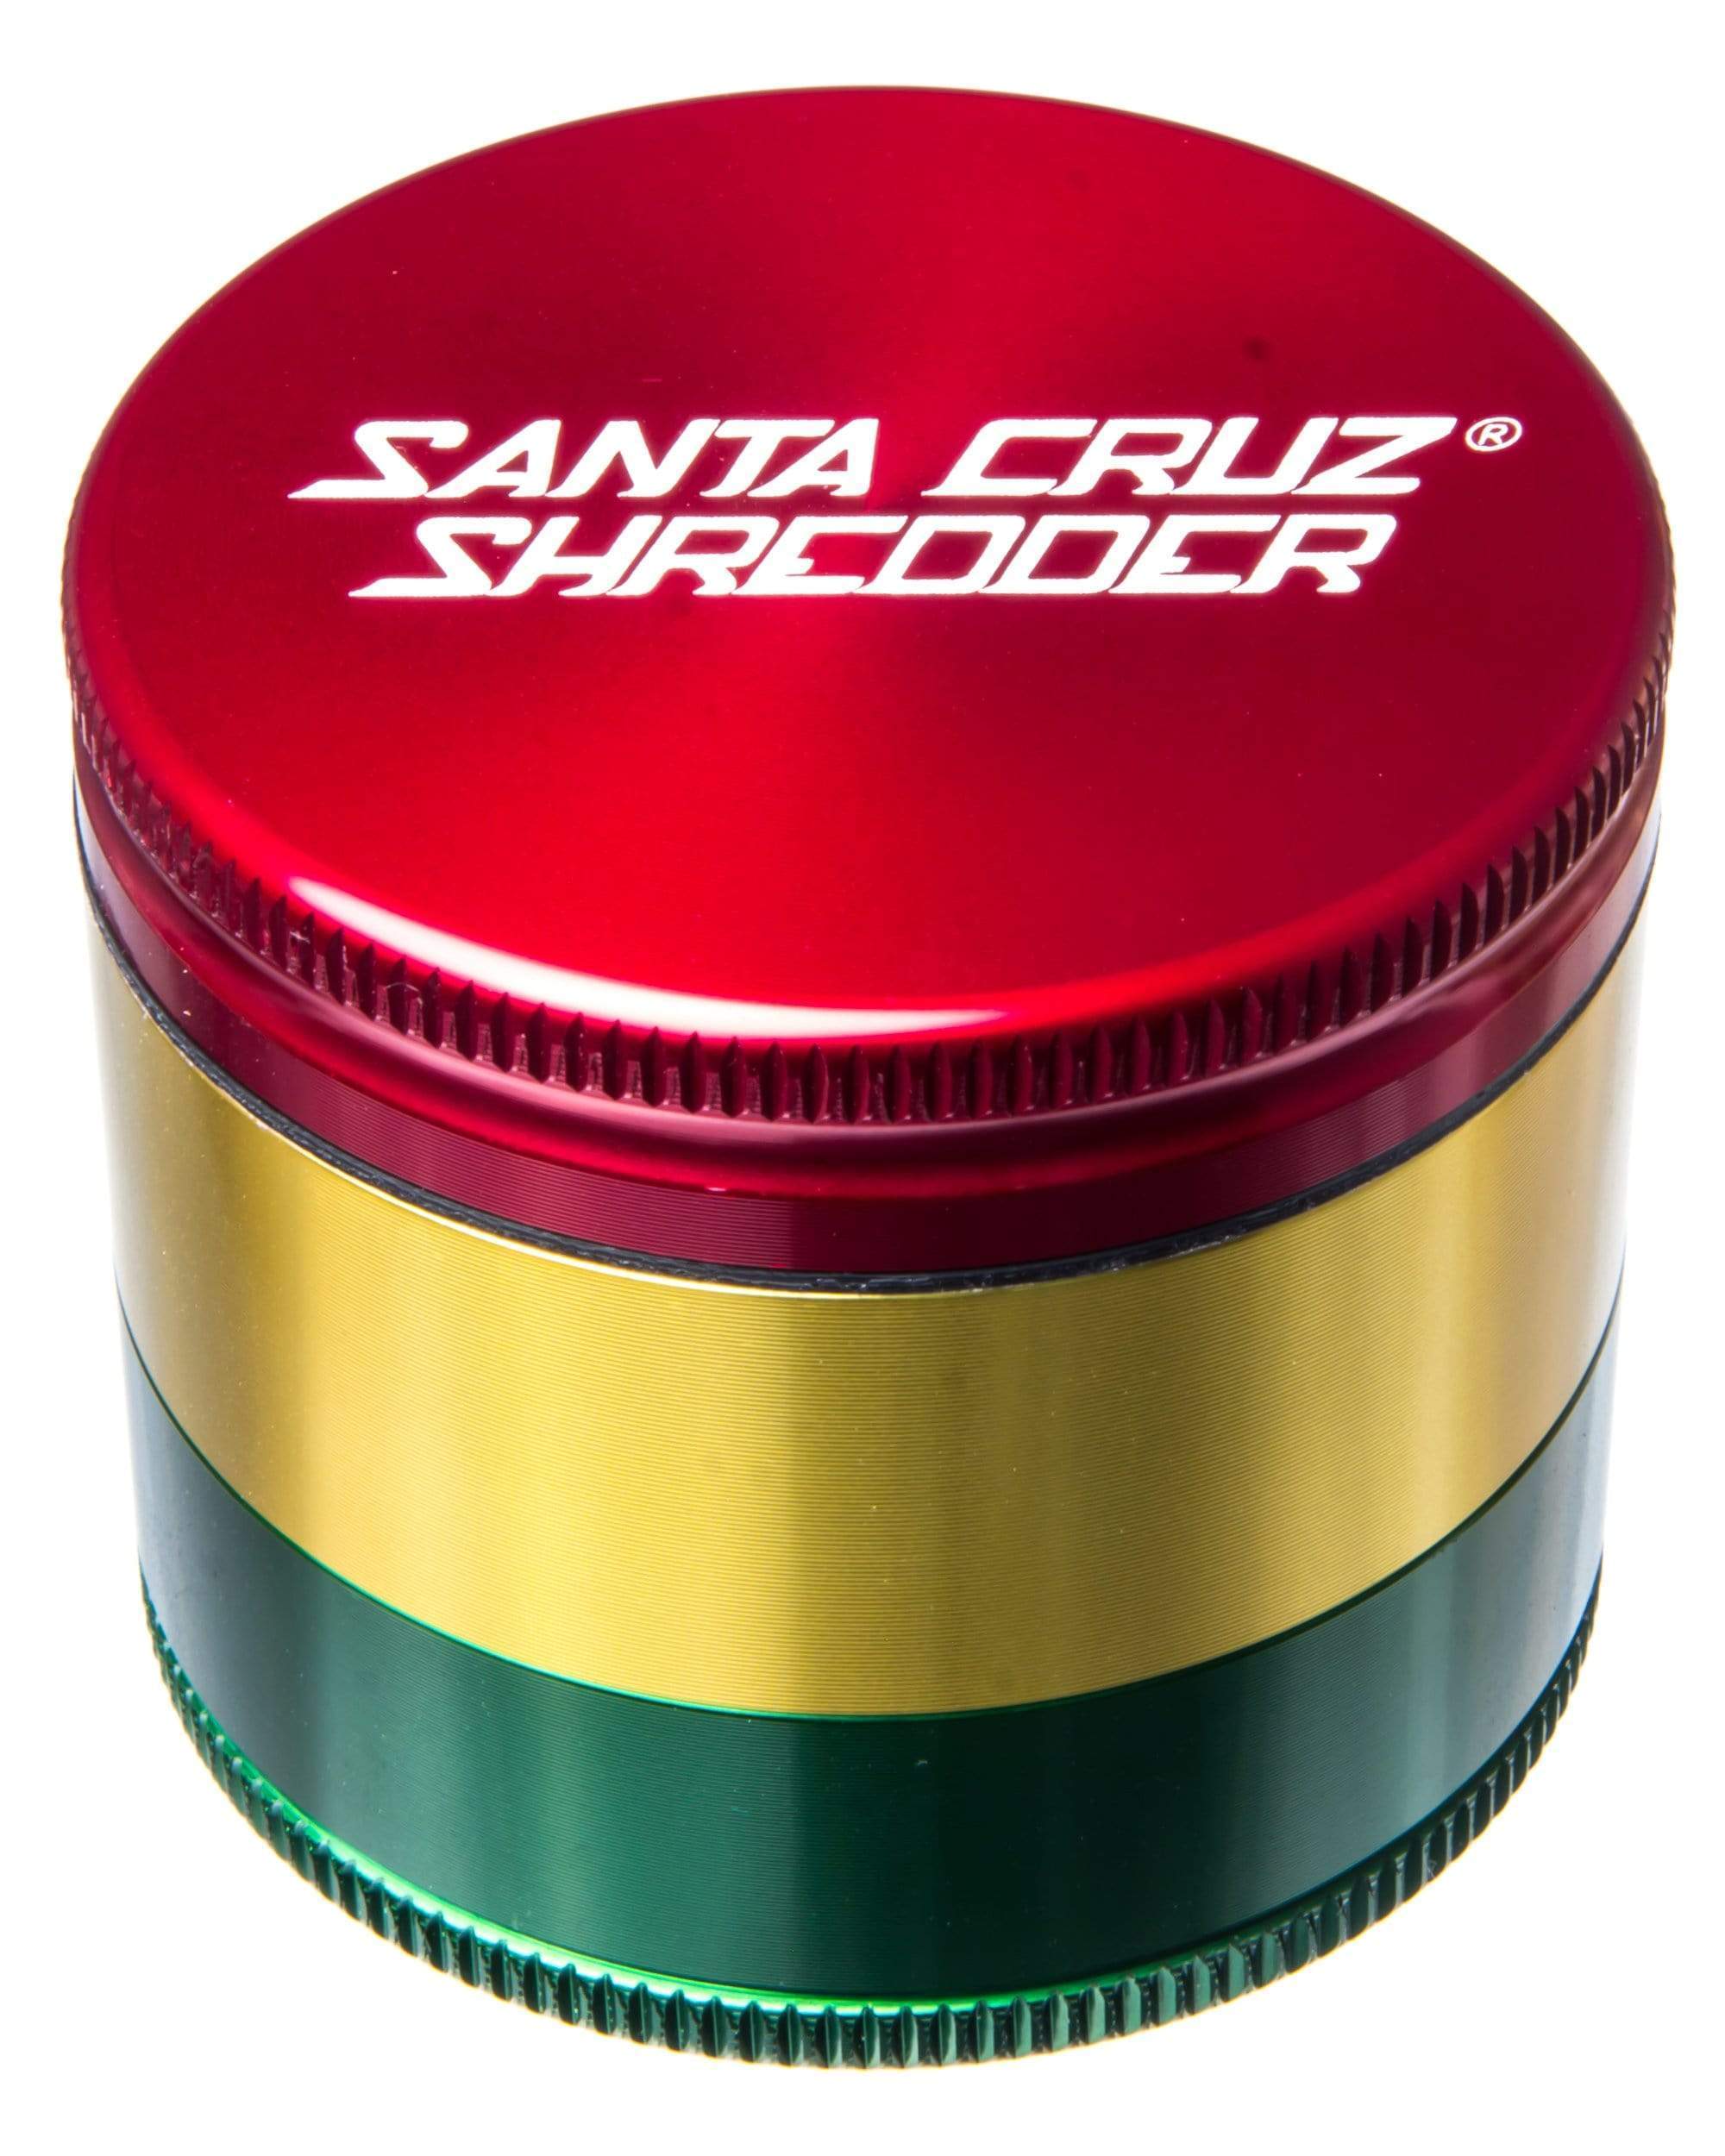 Santa Cruz Shredder Rasta Medium 3 Piece Herb Grinder